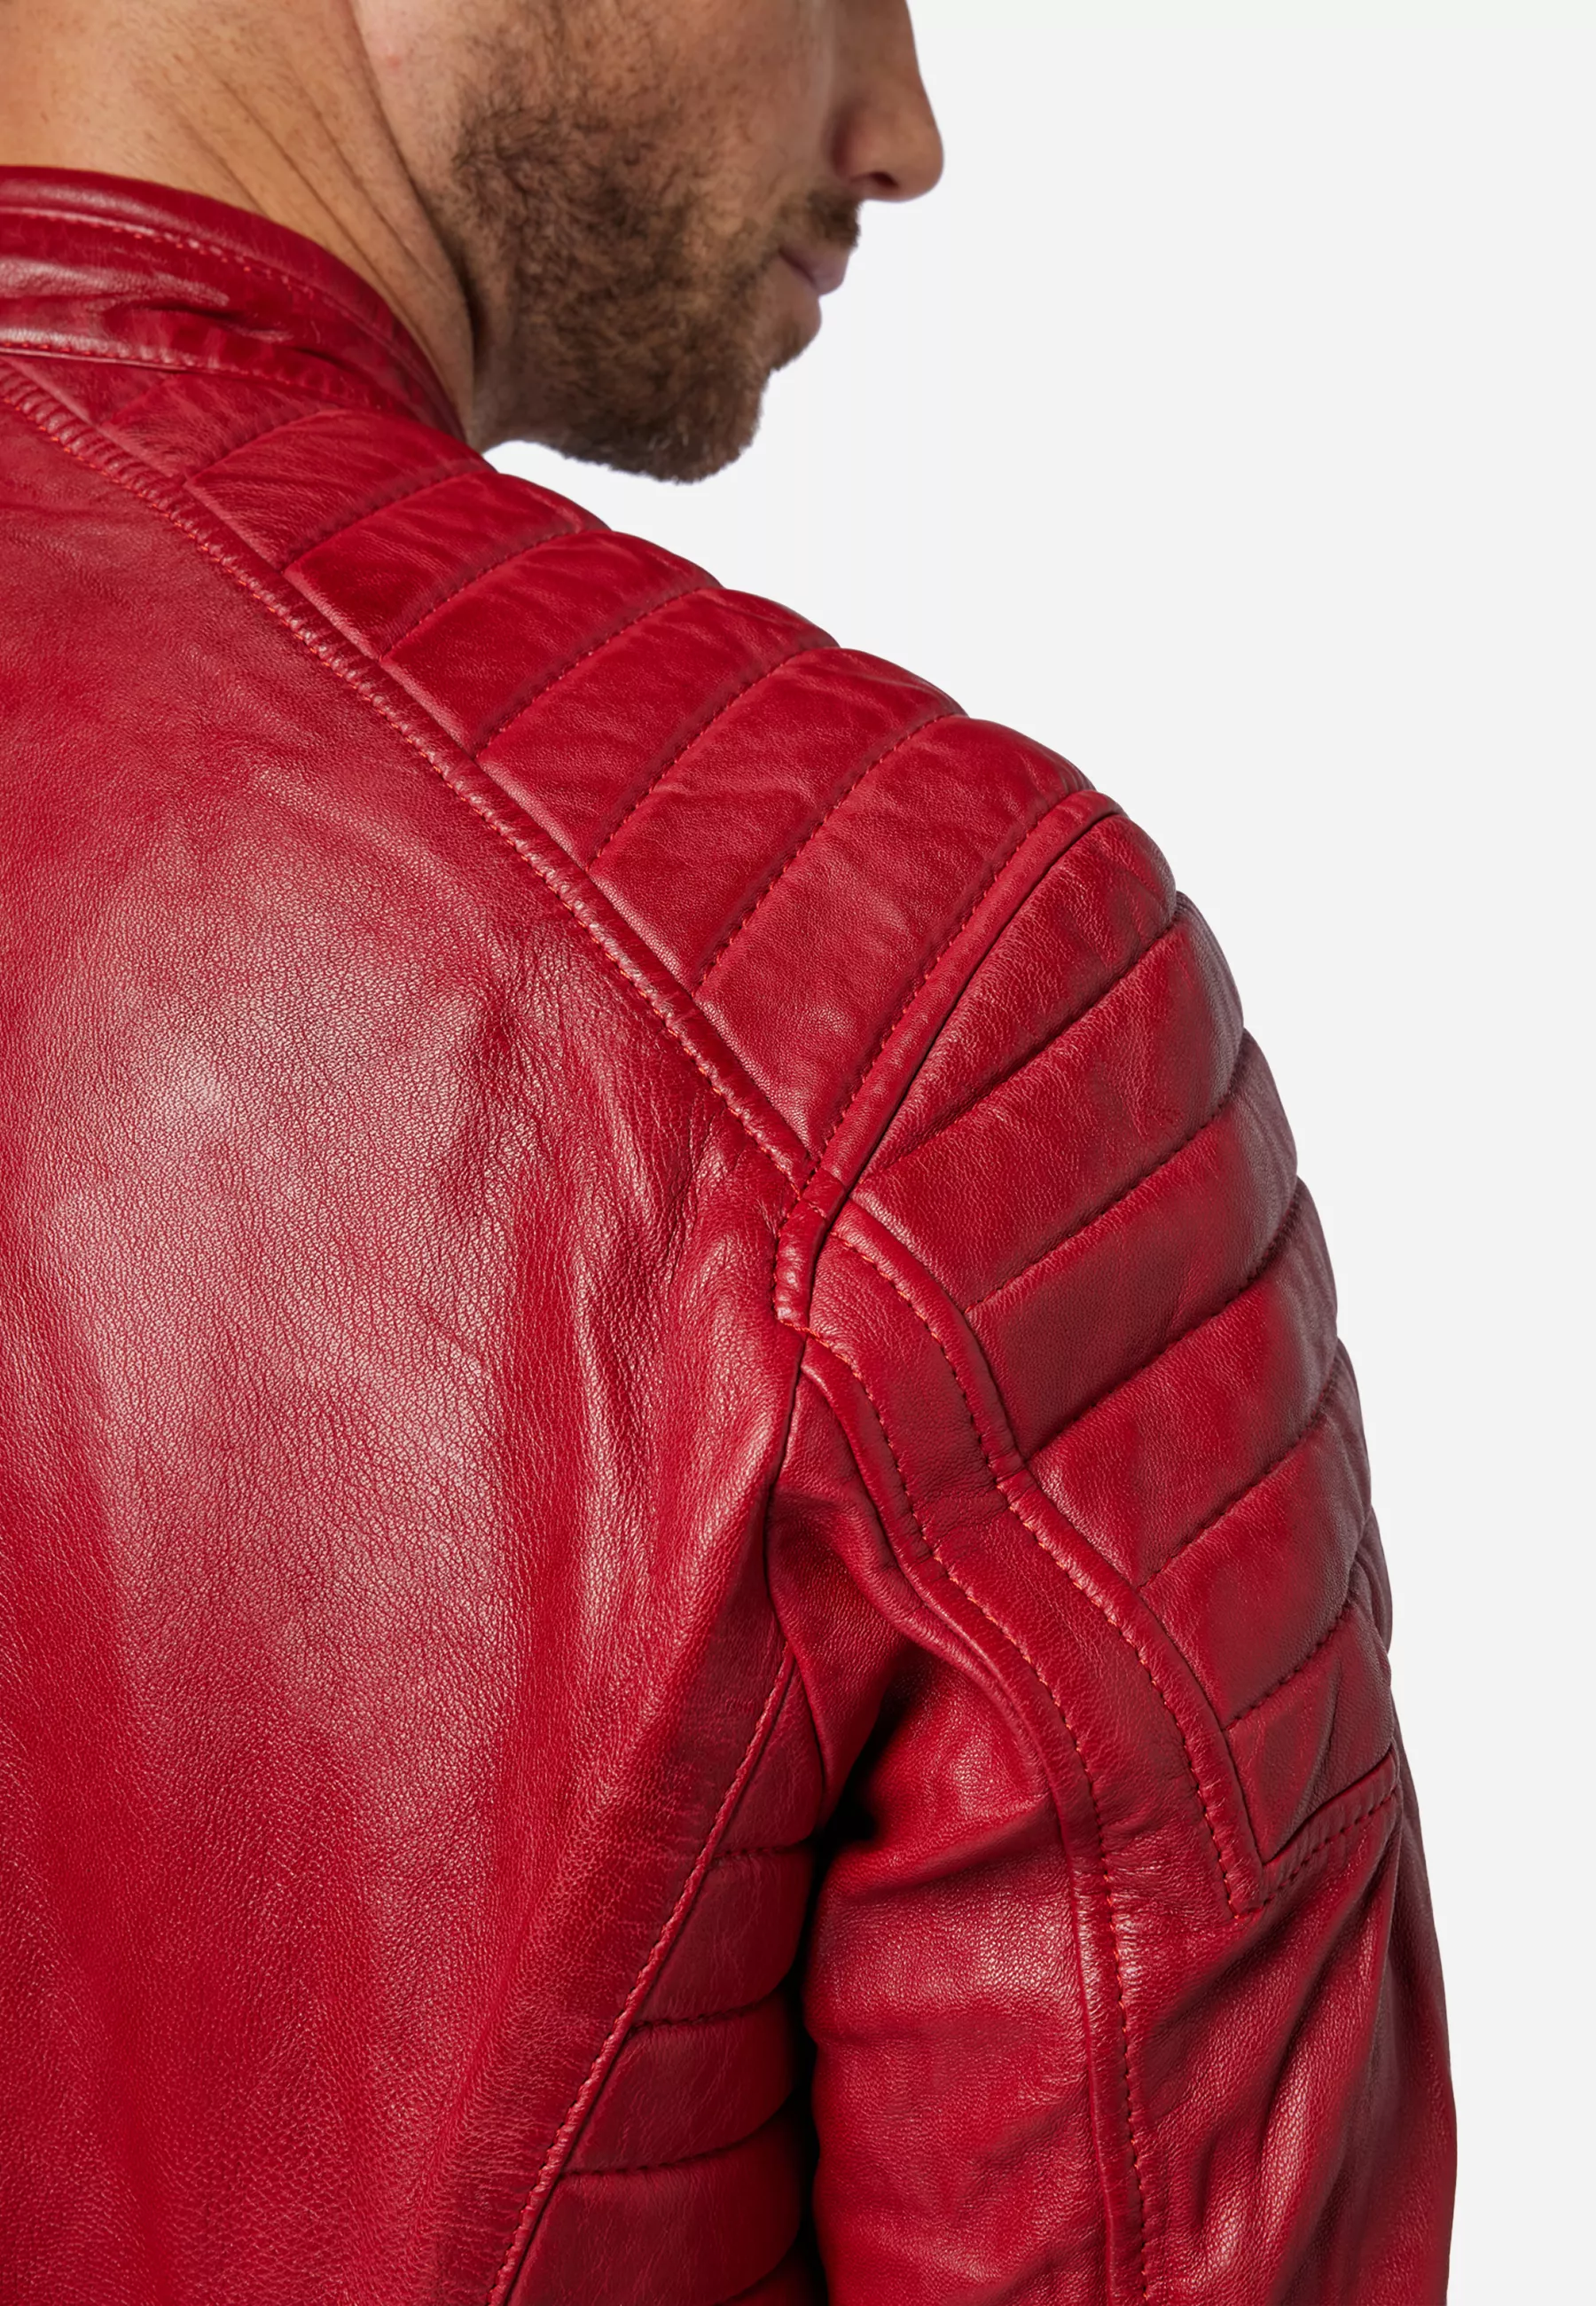 Herren Lederjacke Cooper in Rot von Ricano, Detailansicht am Model Schulter